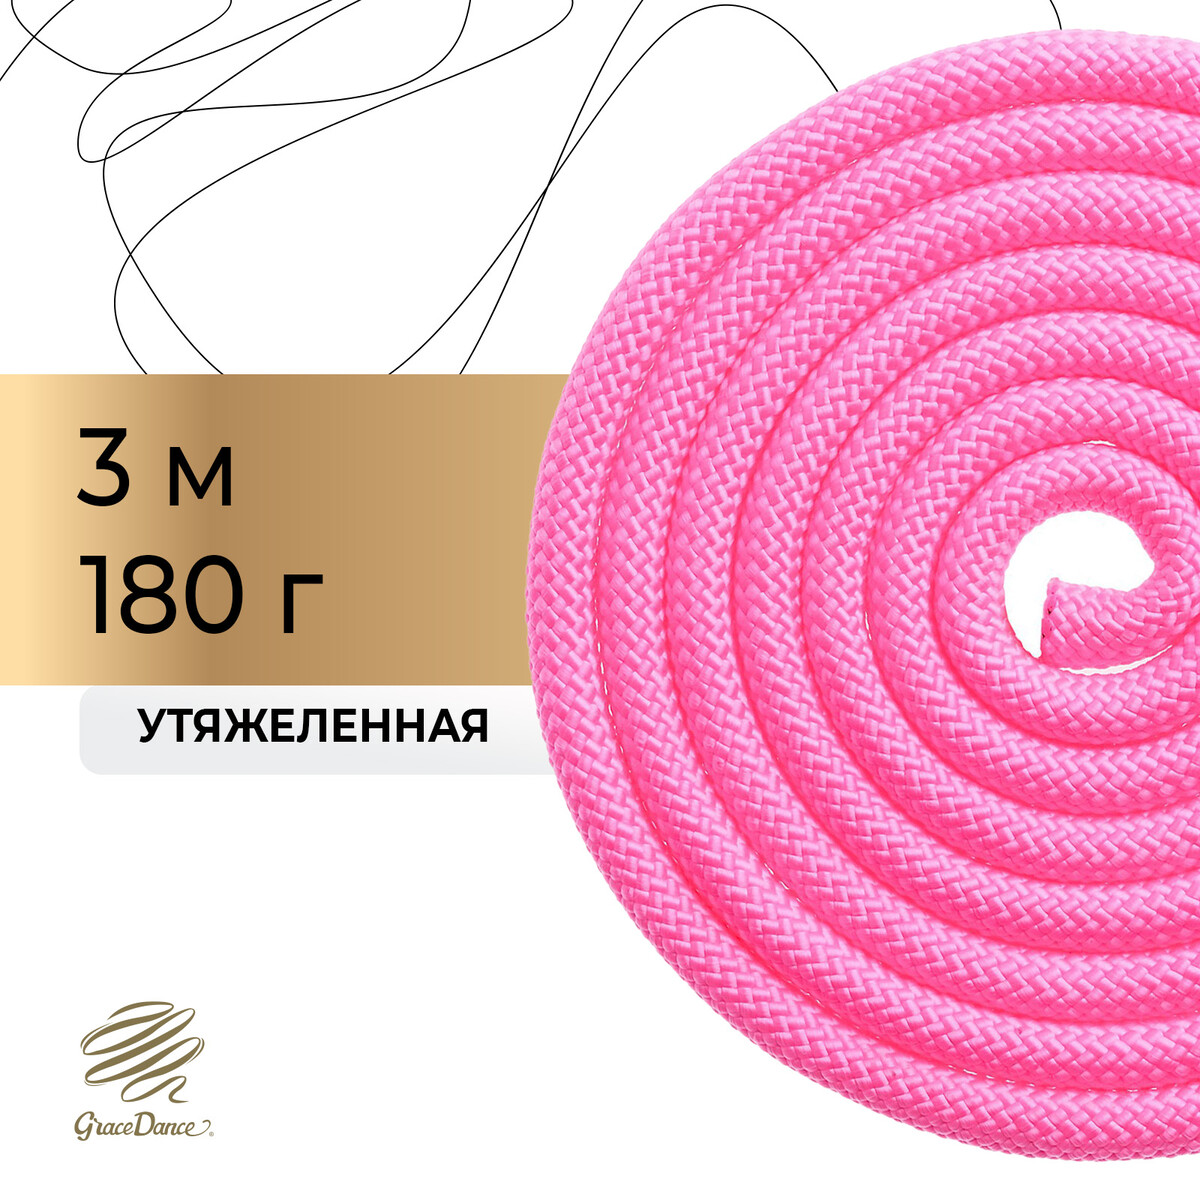 Скакалка для художественной гимнастики утяжеленная grace dance, 3 м, цвет розовый